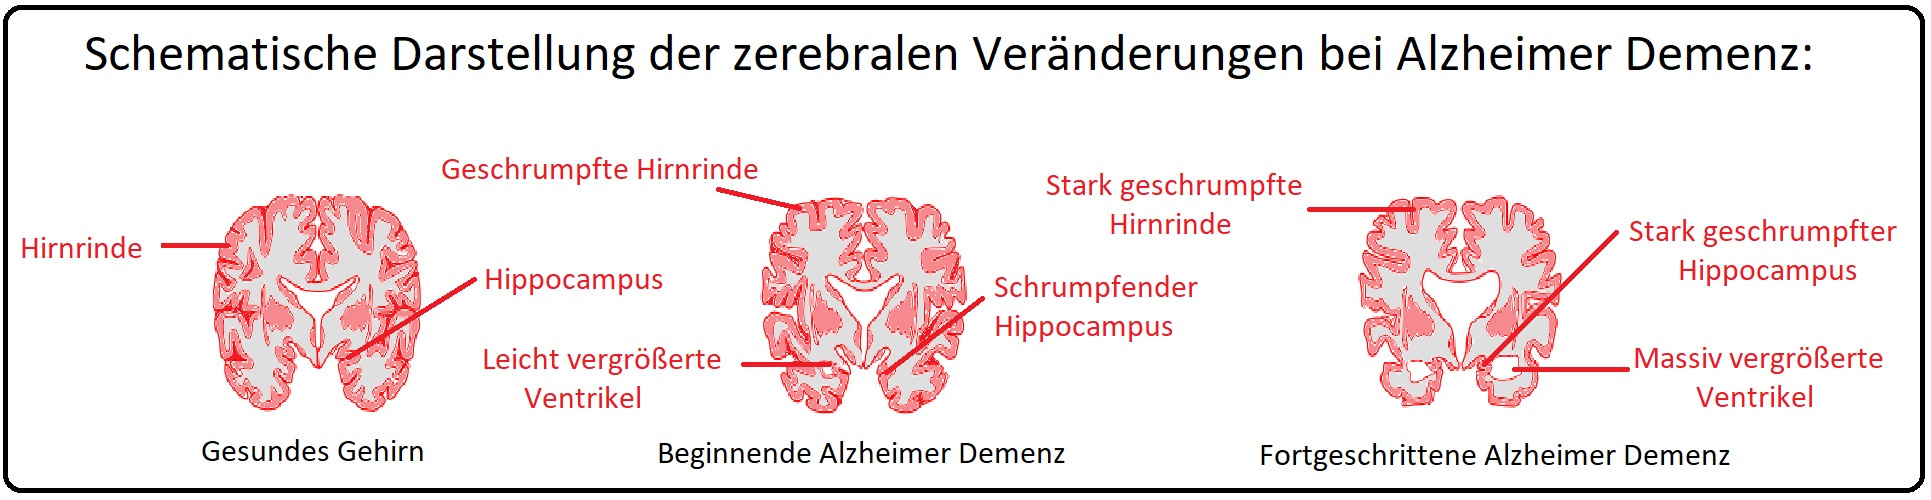 779 Schematische Darstellung der zerebralen Veränderungen bei Alzheimer Demenz